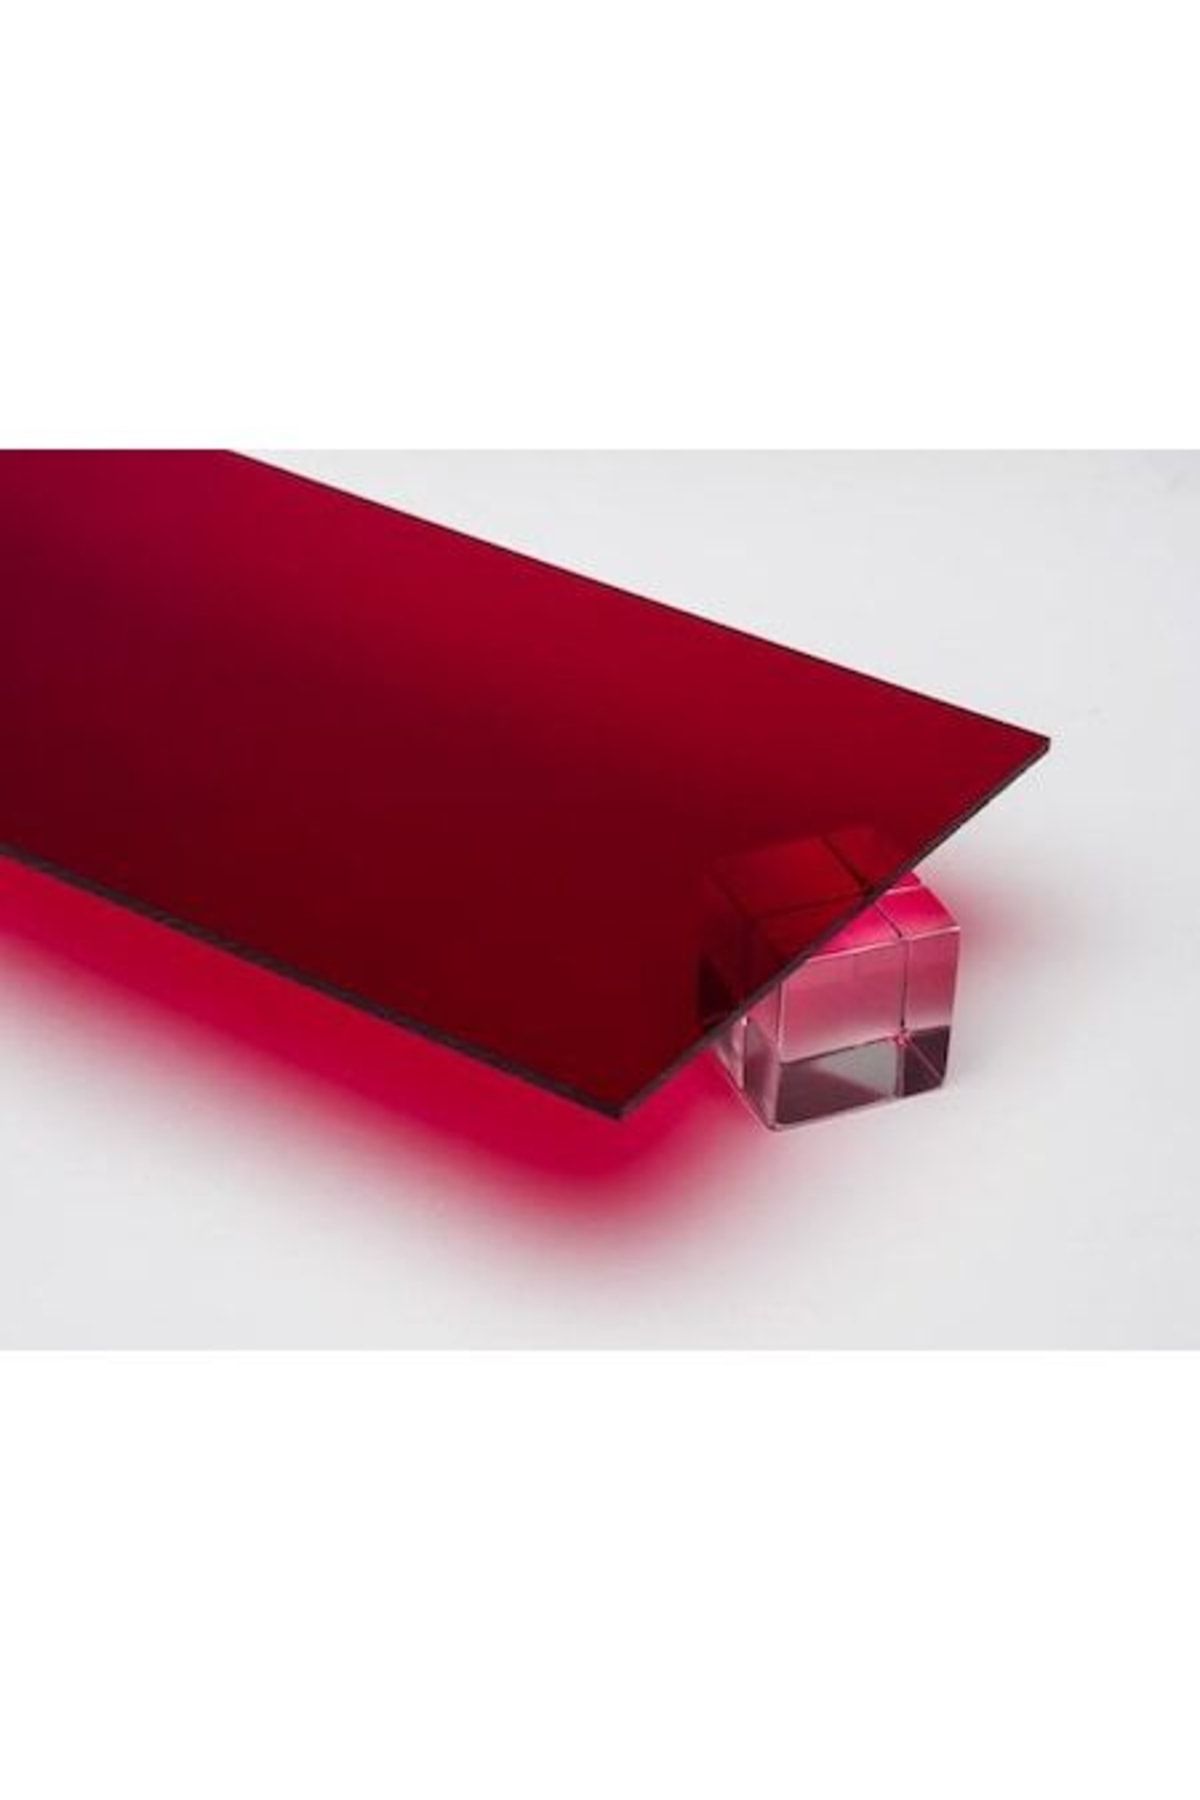 Işık Plastik 2.8 - 3mm Transparan Kırmızı Pleksiglas Levha